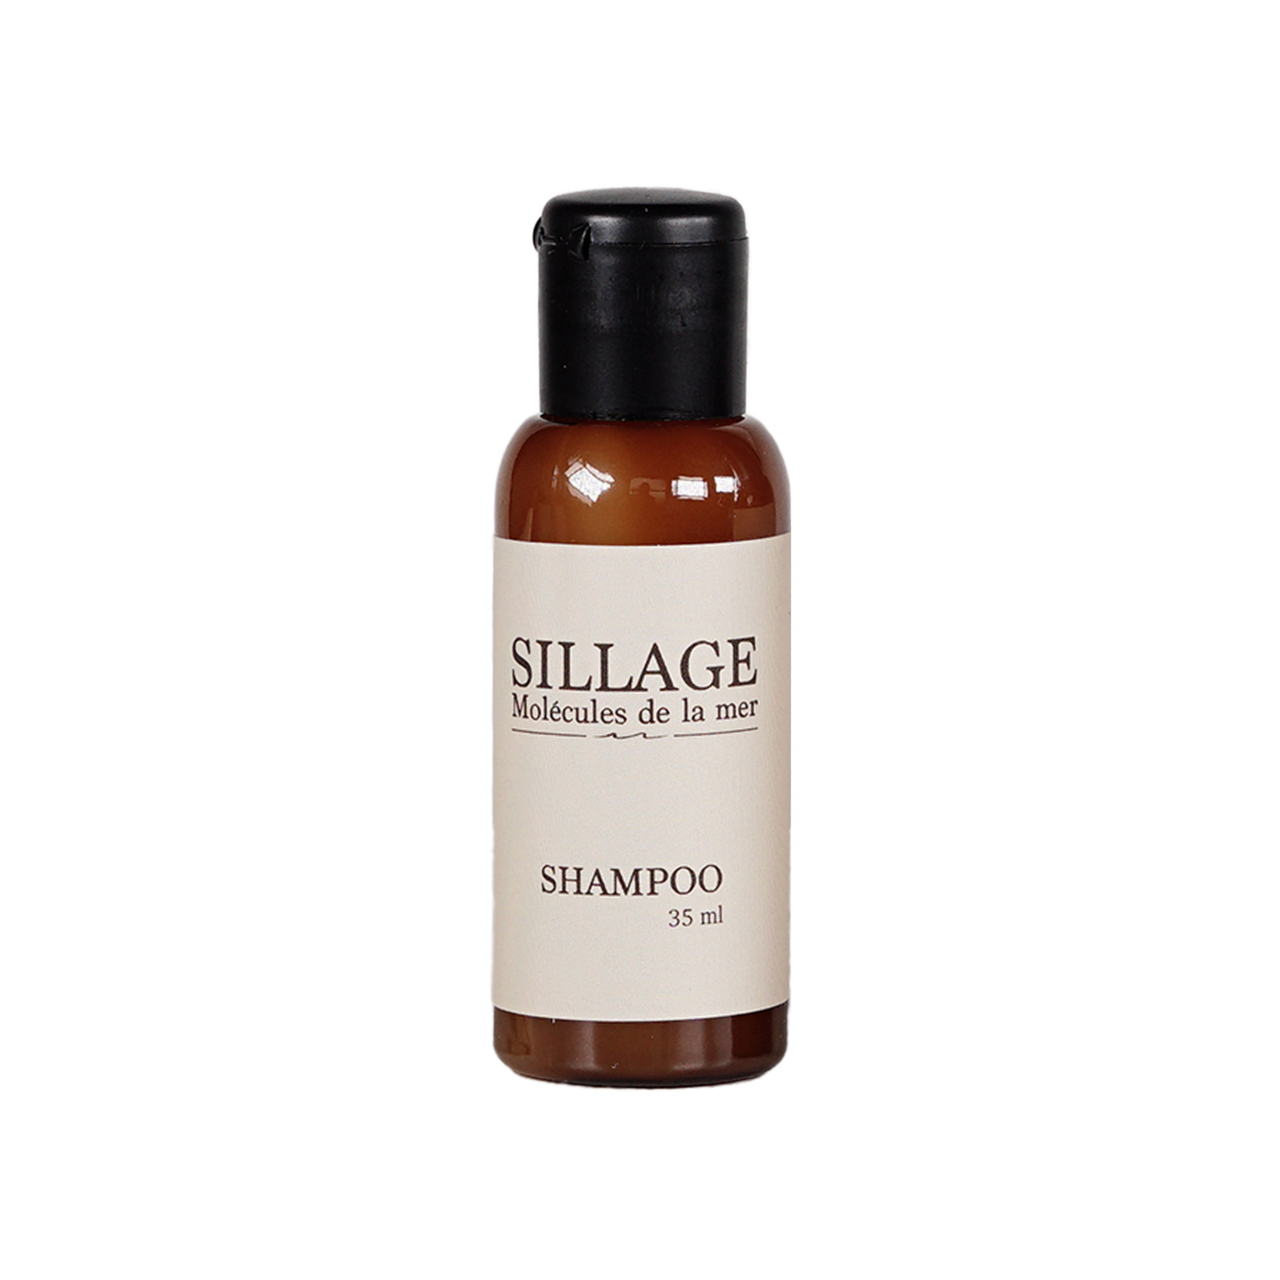 Shampoo Sillage 35 ml